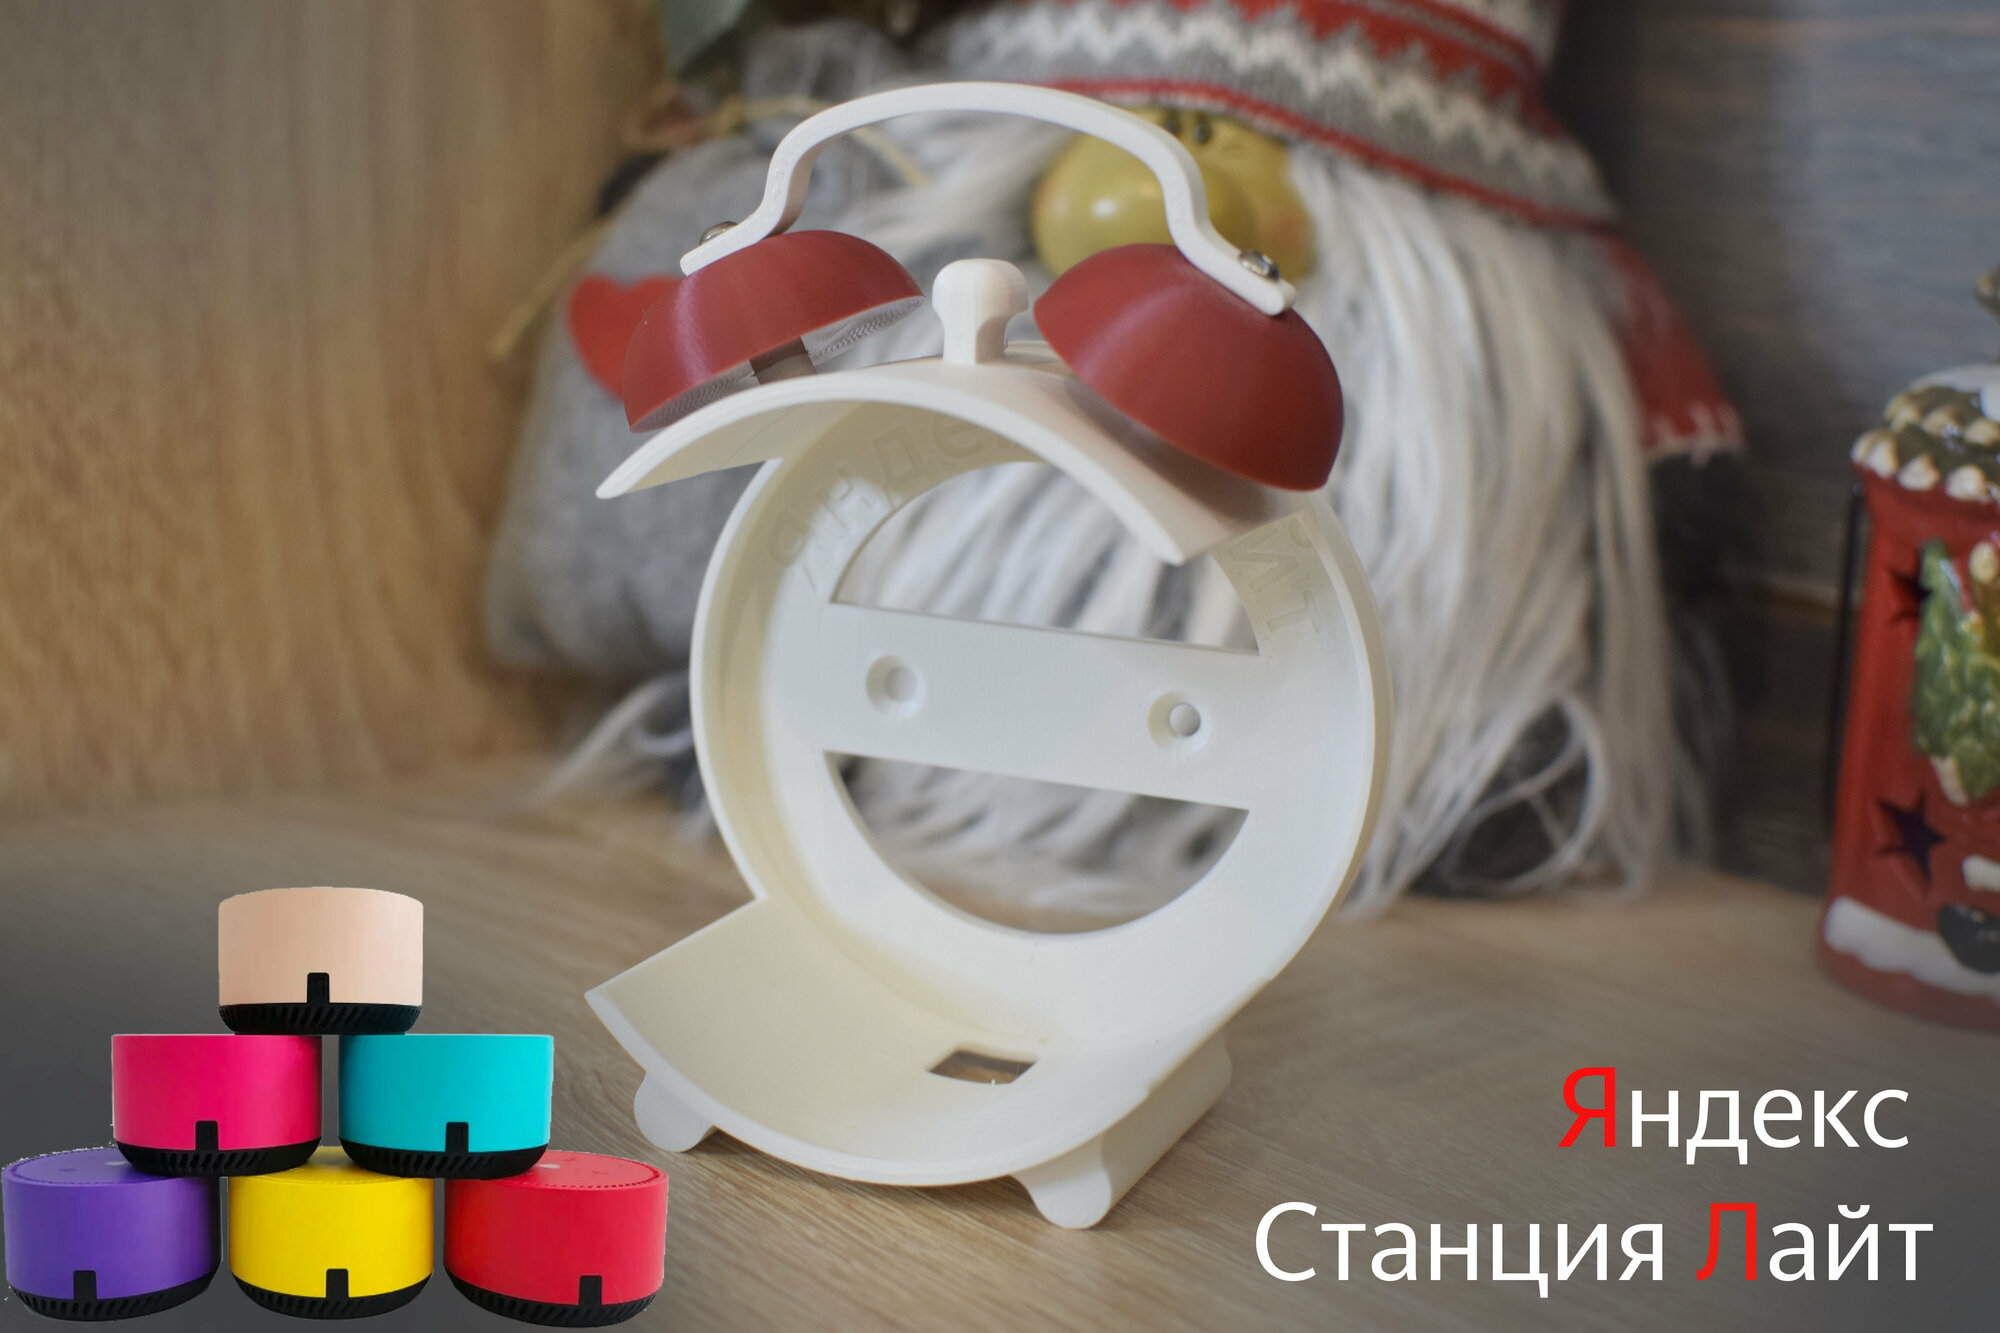 Подставка для Яндекс Cтанции Лайт (белая с красным)